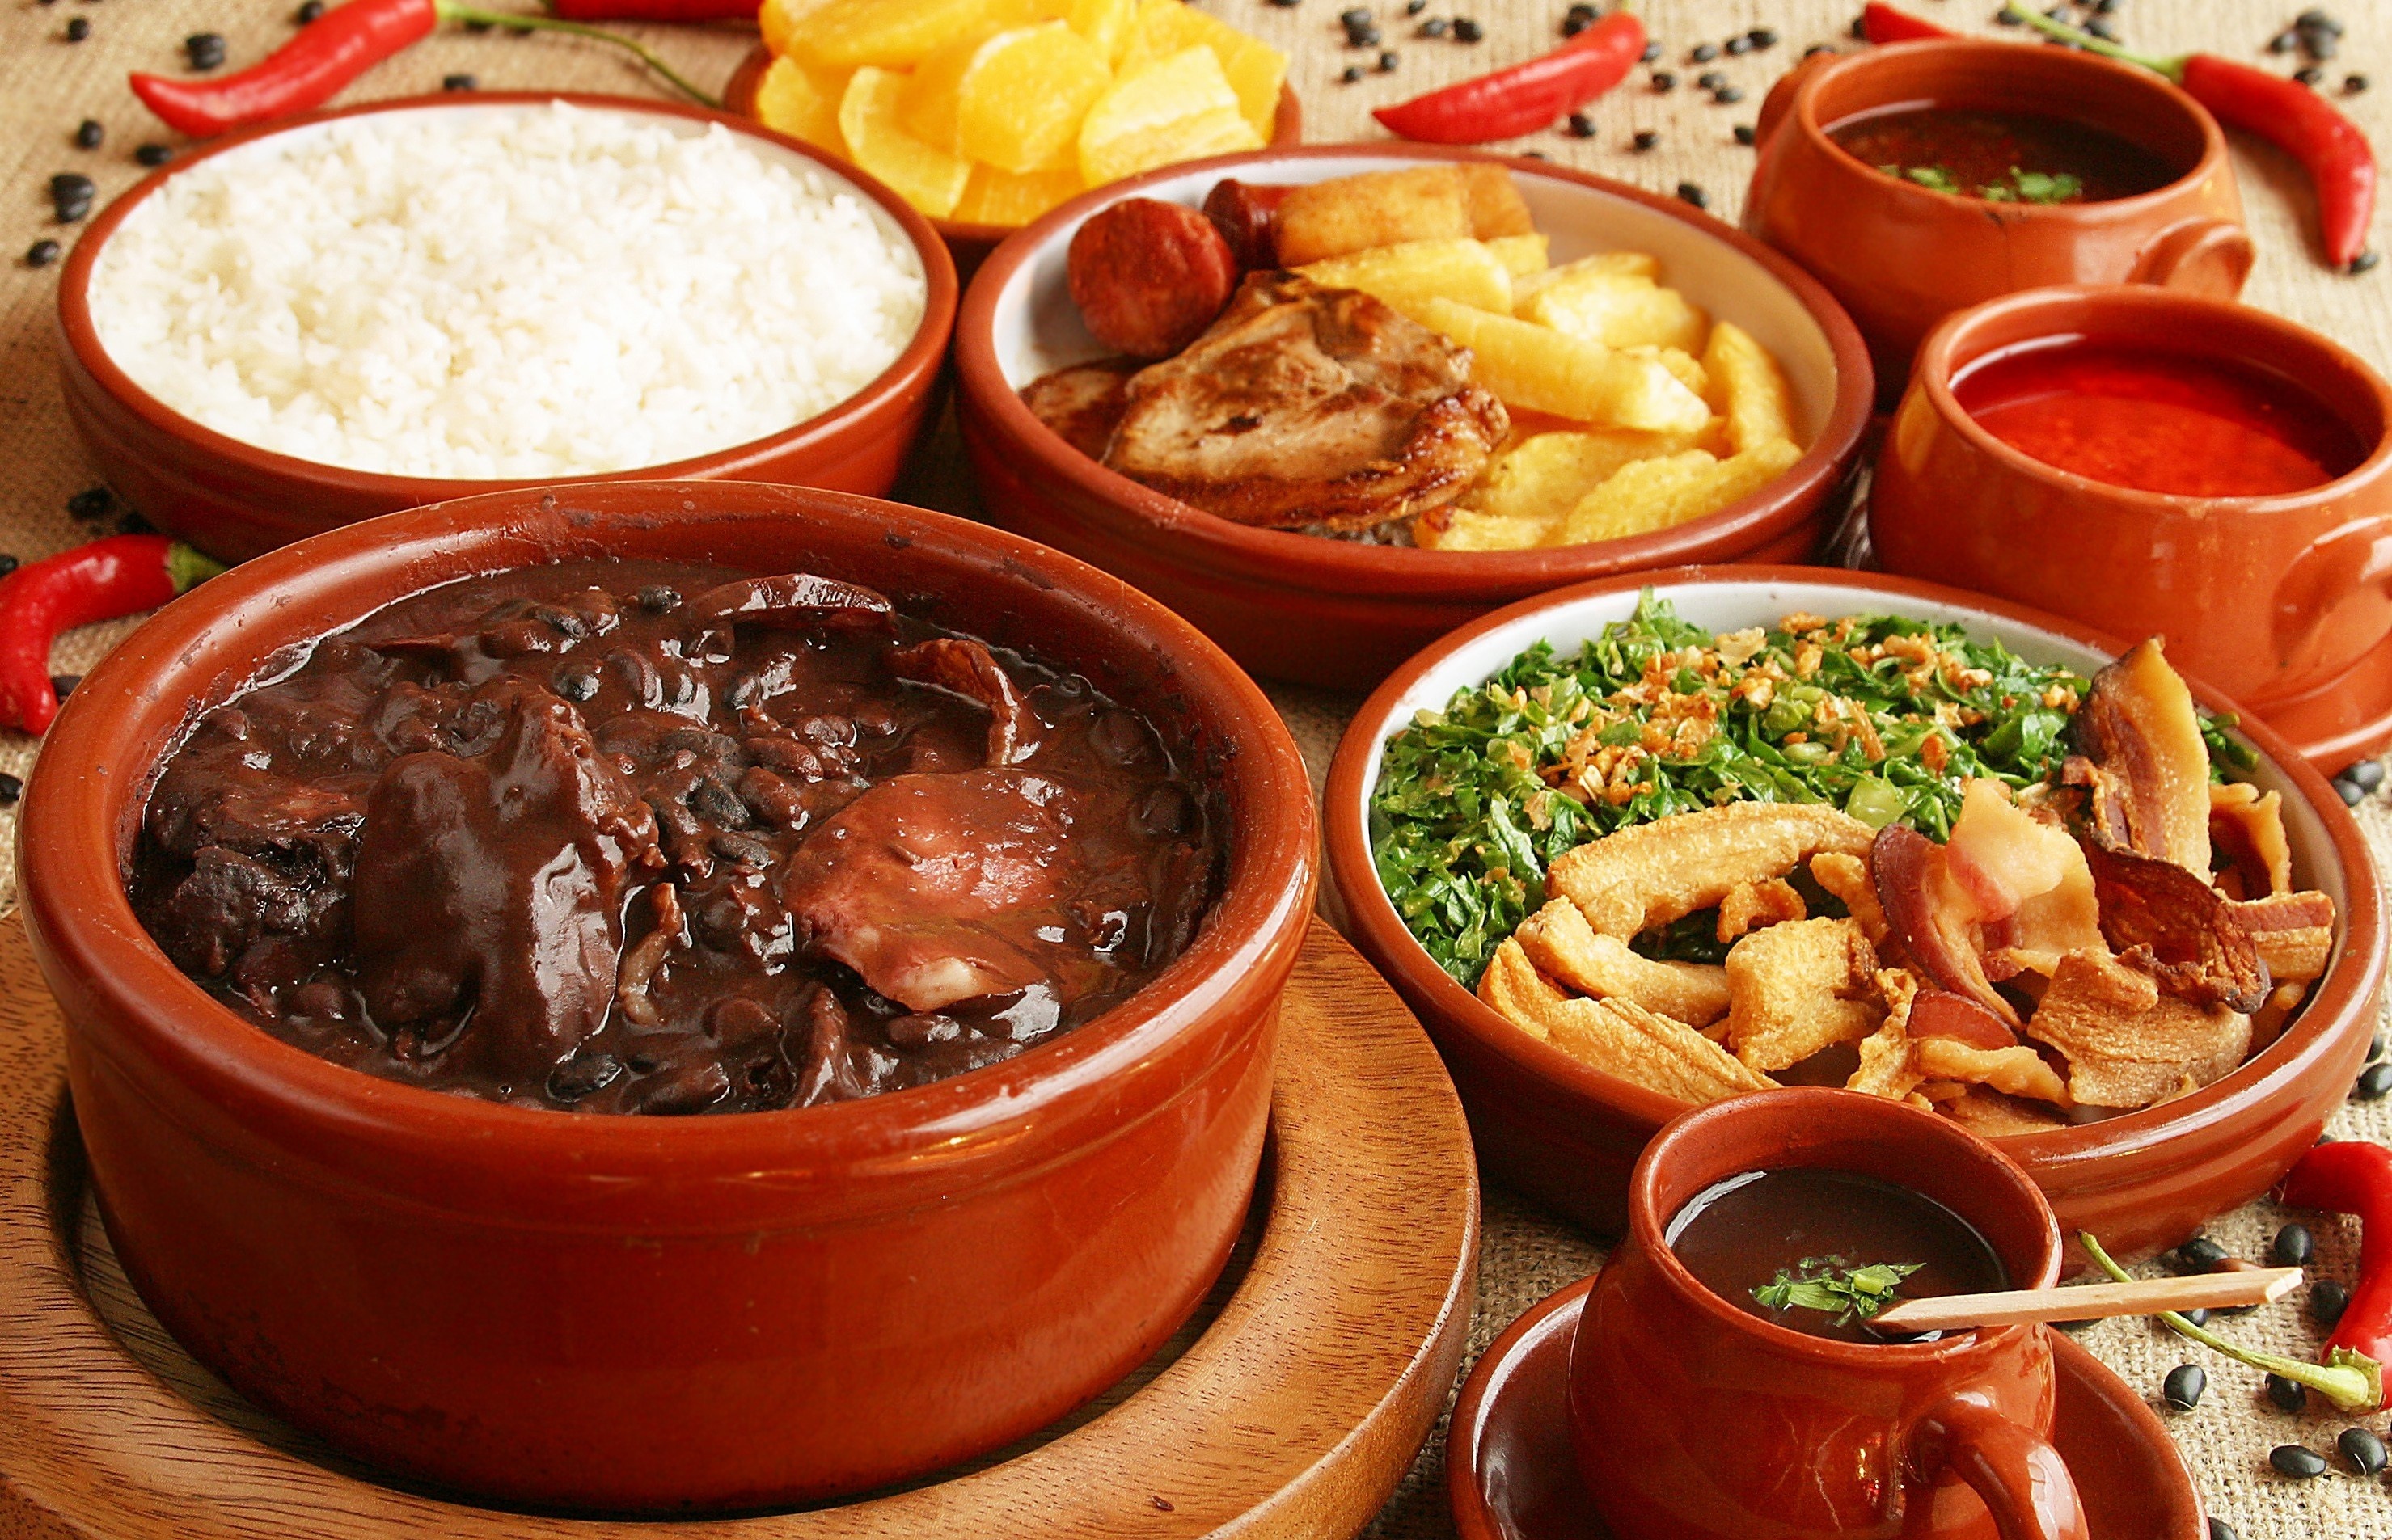 巴西国菜 黑豆炖肉饭 feijoada (6人份)的做法